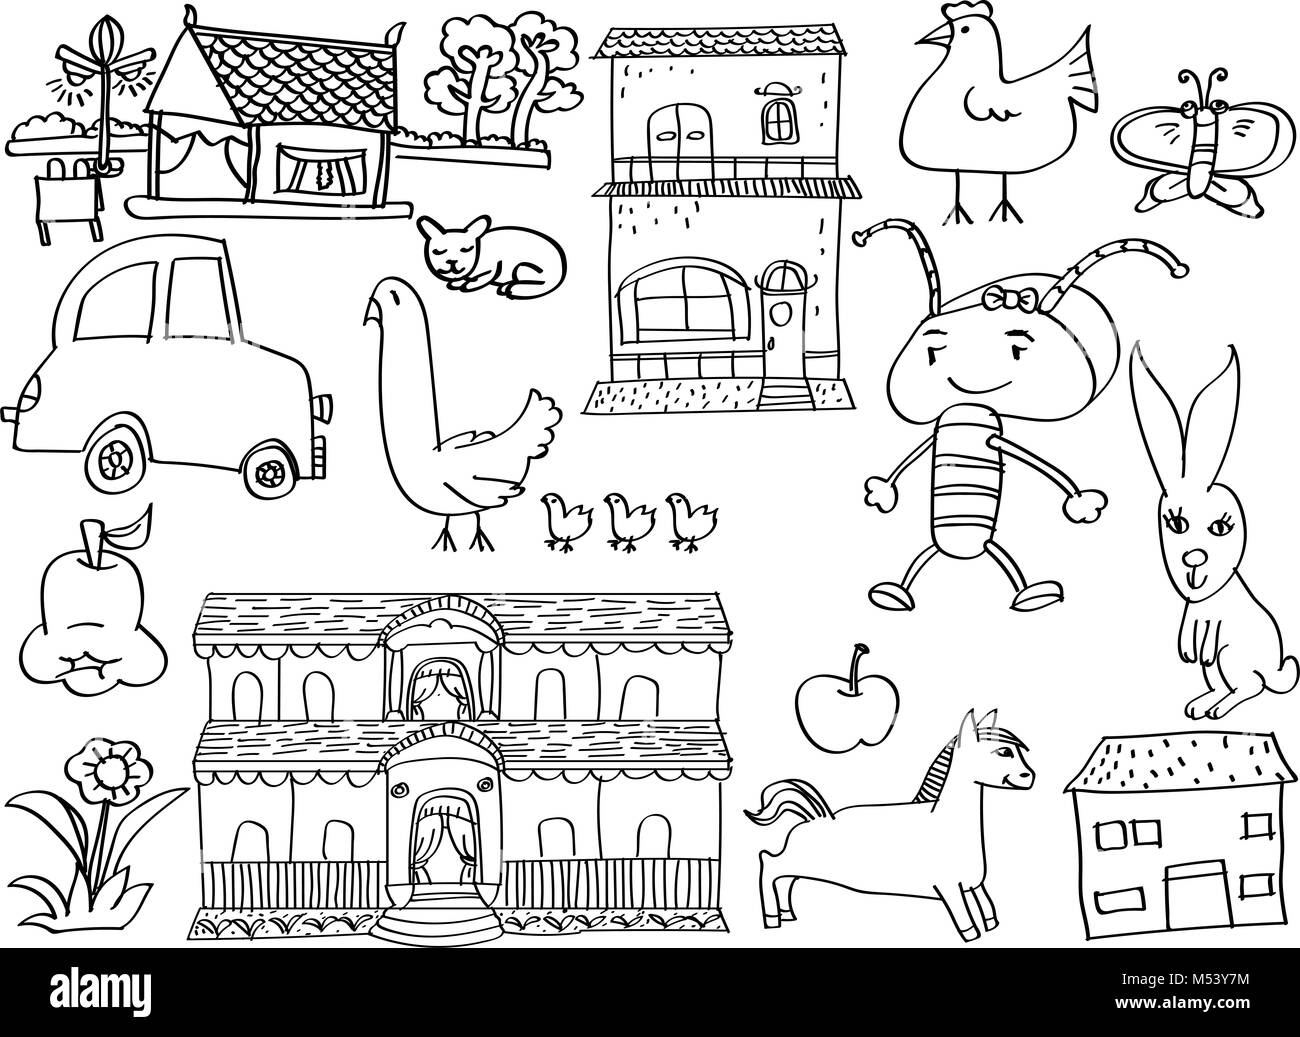 Cartoon Doodle Kinder, Hand zeichnen Vektor Stockfoto